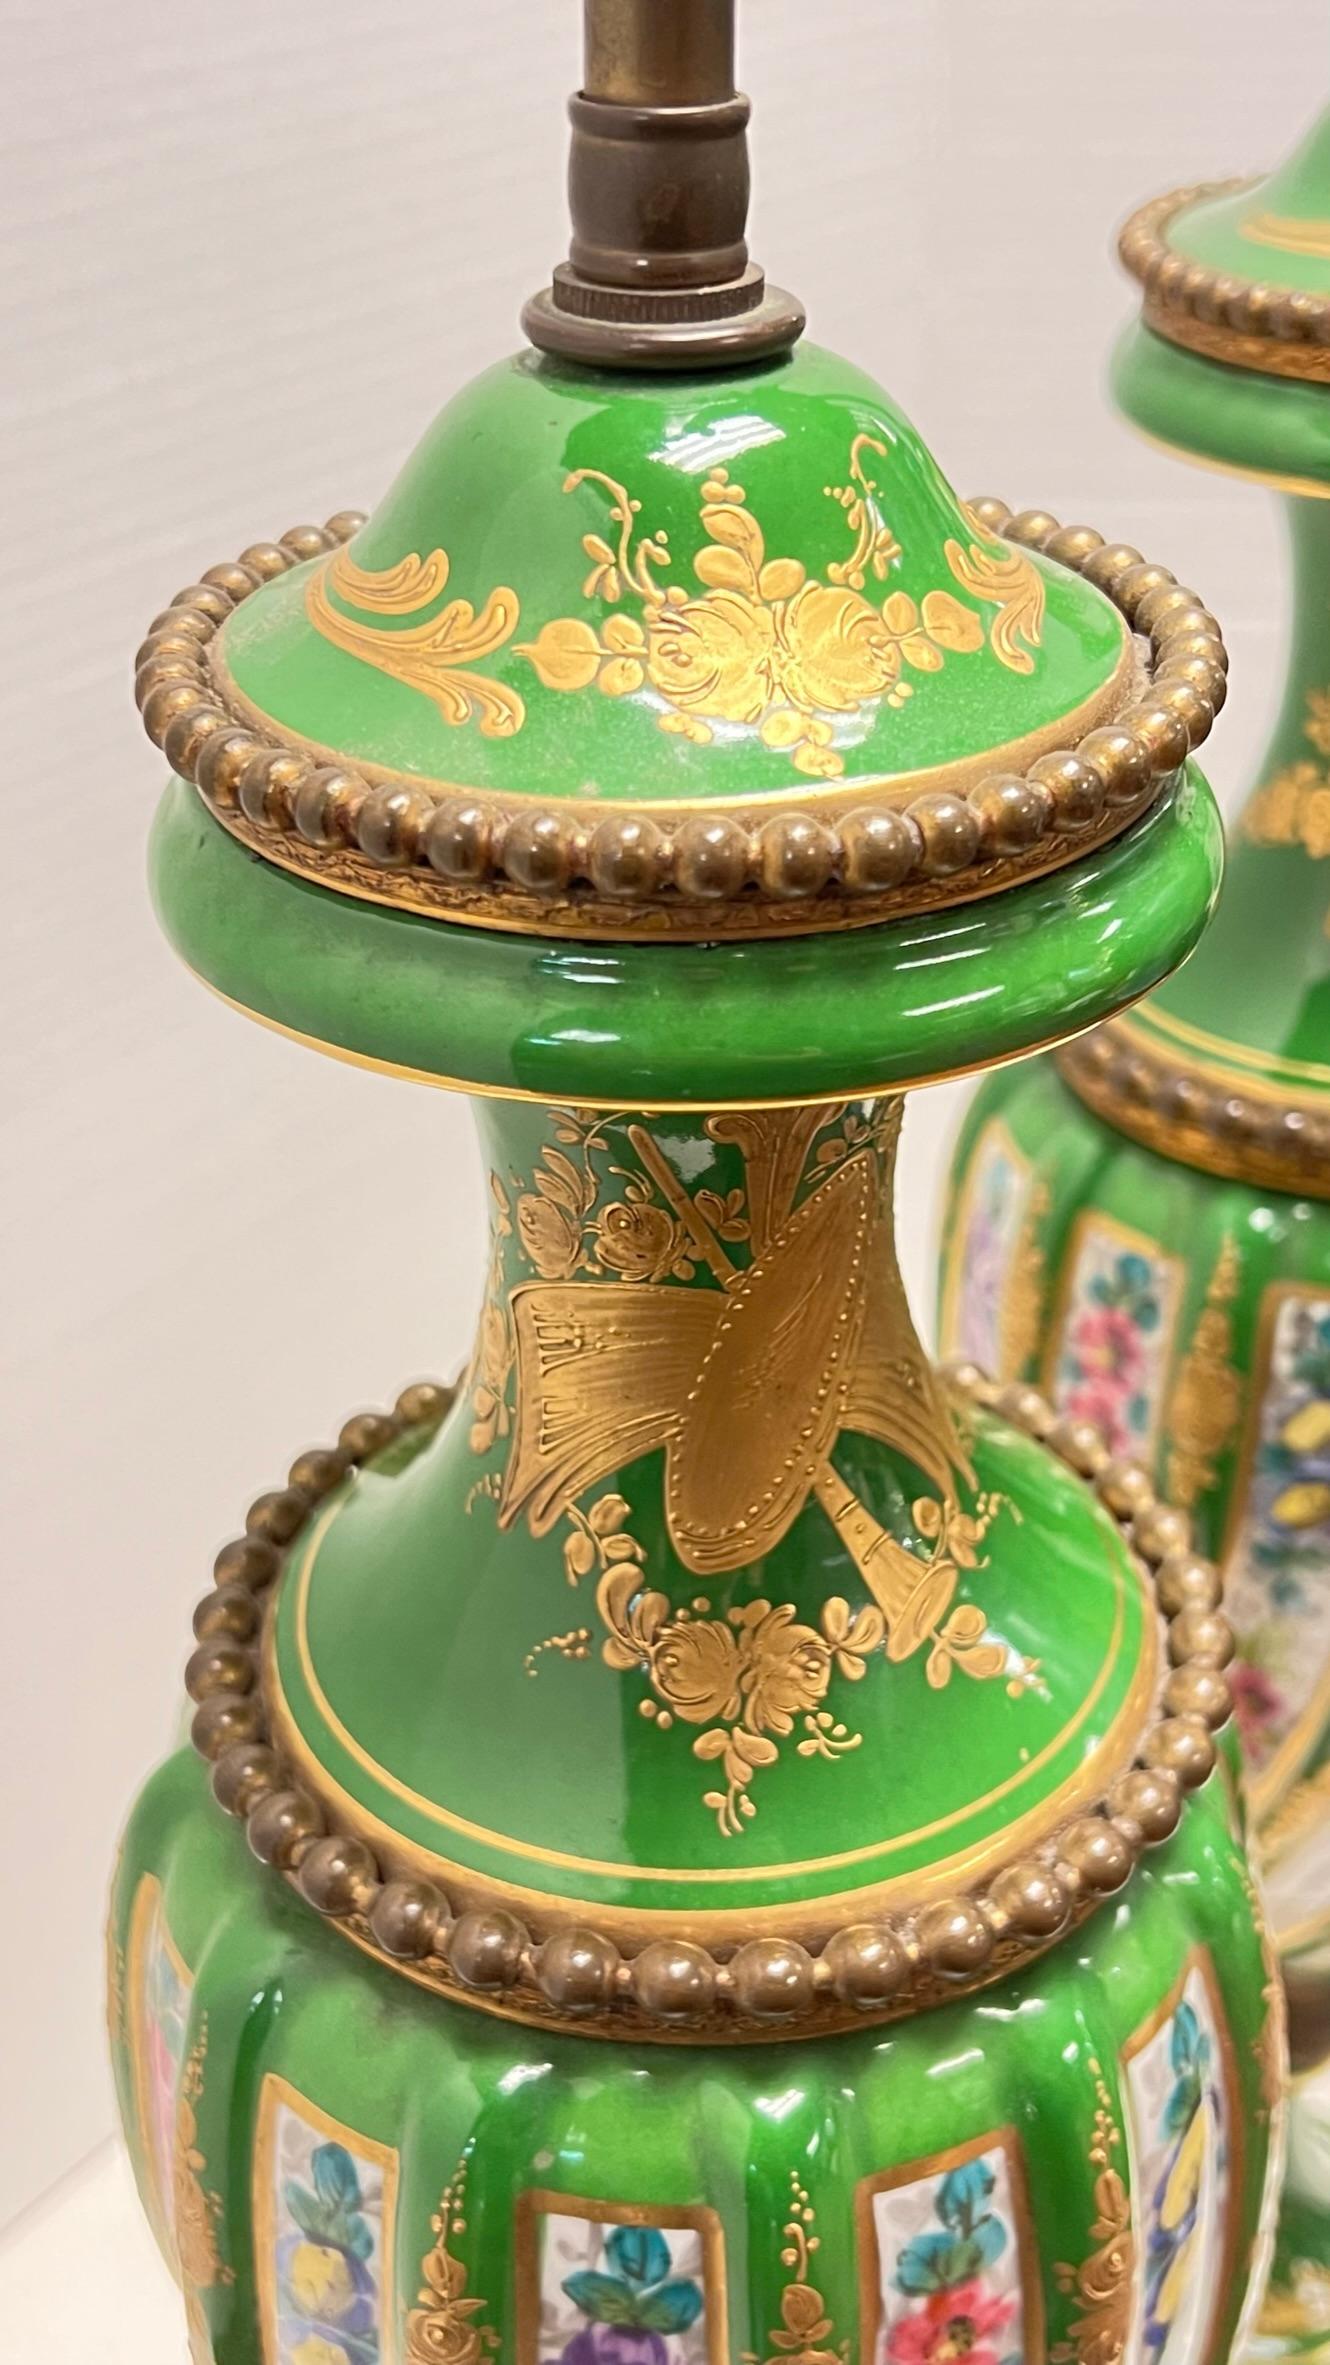 Paire de vases anciens (19e siècle) en porcelaine de Sèvres de forme nervurée en spirale, montés comme lampes de table avec des montures en bronze et de fins motifs floraux peints et dorés sur fond émaillé vert.  Dans le style Louis XVI / Napoléon